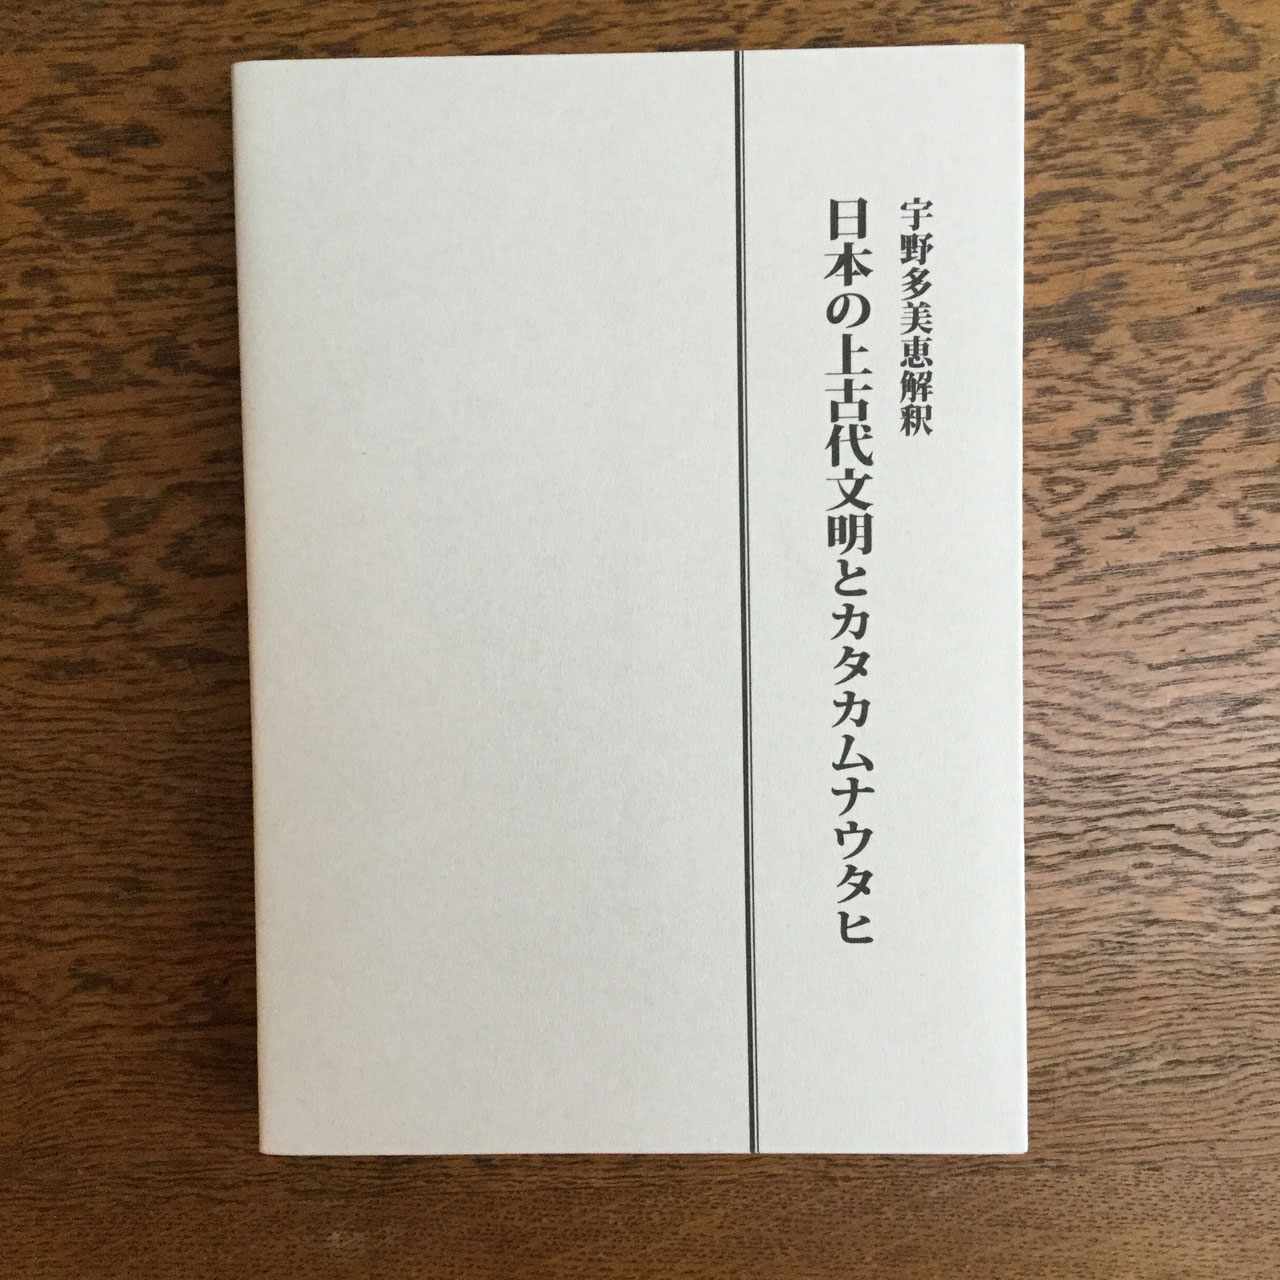 相似象 関連 日本の上古代文化とカタカムナウタヒ一巻、二巻/ 植物波